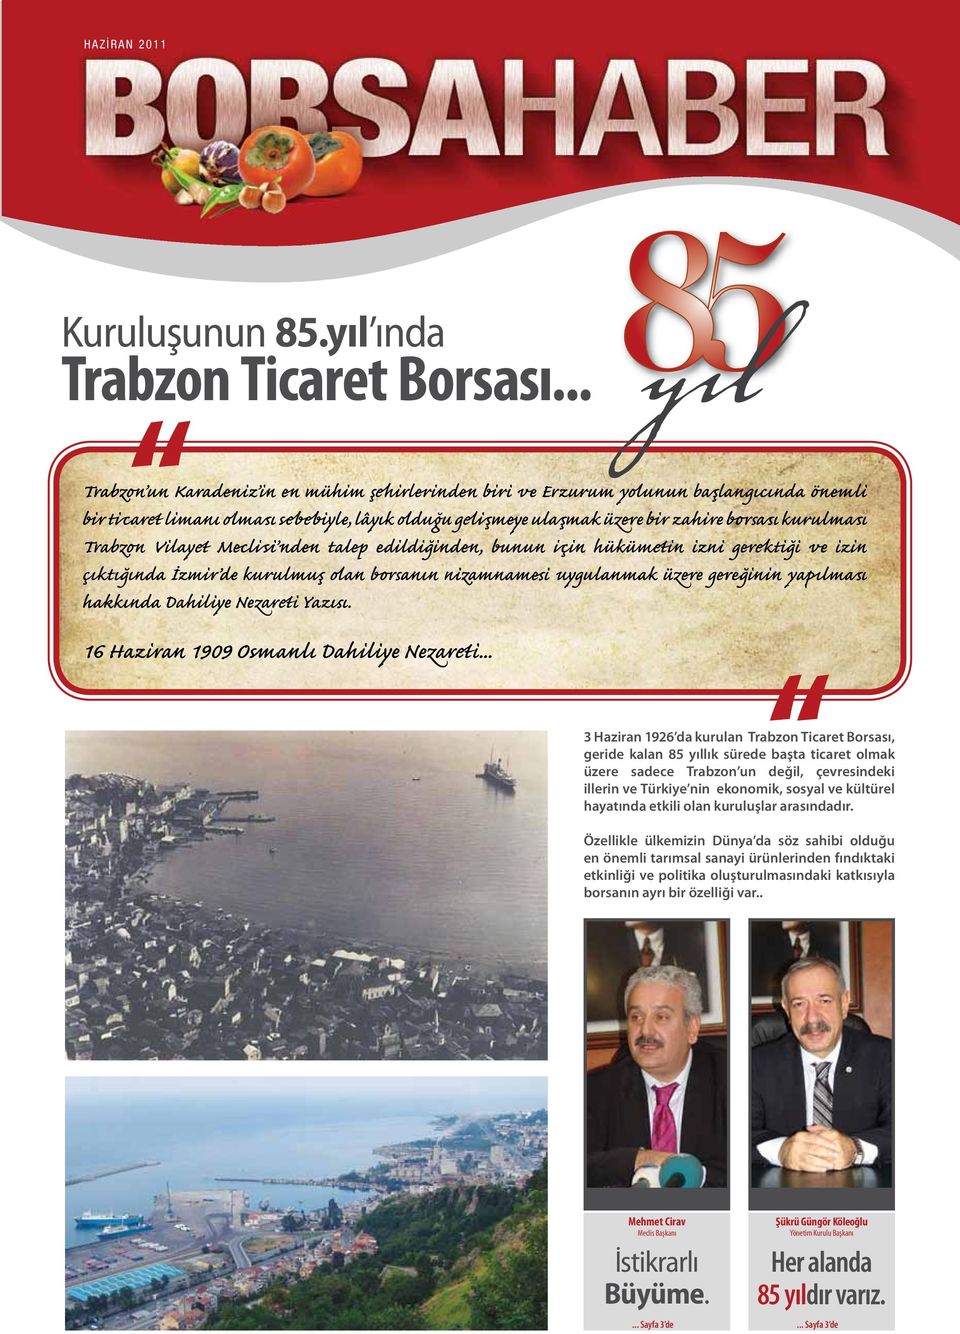 Trabzon Vilayet Mecli si nden talep edildiğinden, bunun için hükümetin izni gerektiği ve izin çıktığında İzmir de kurulmuş olan borsanın nizamnamesi uygulanmak üzere gereğinin yapılması hakkında